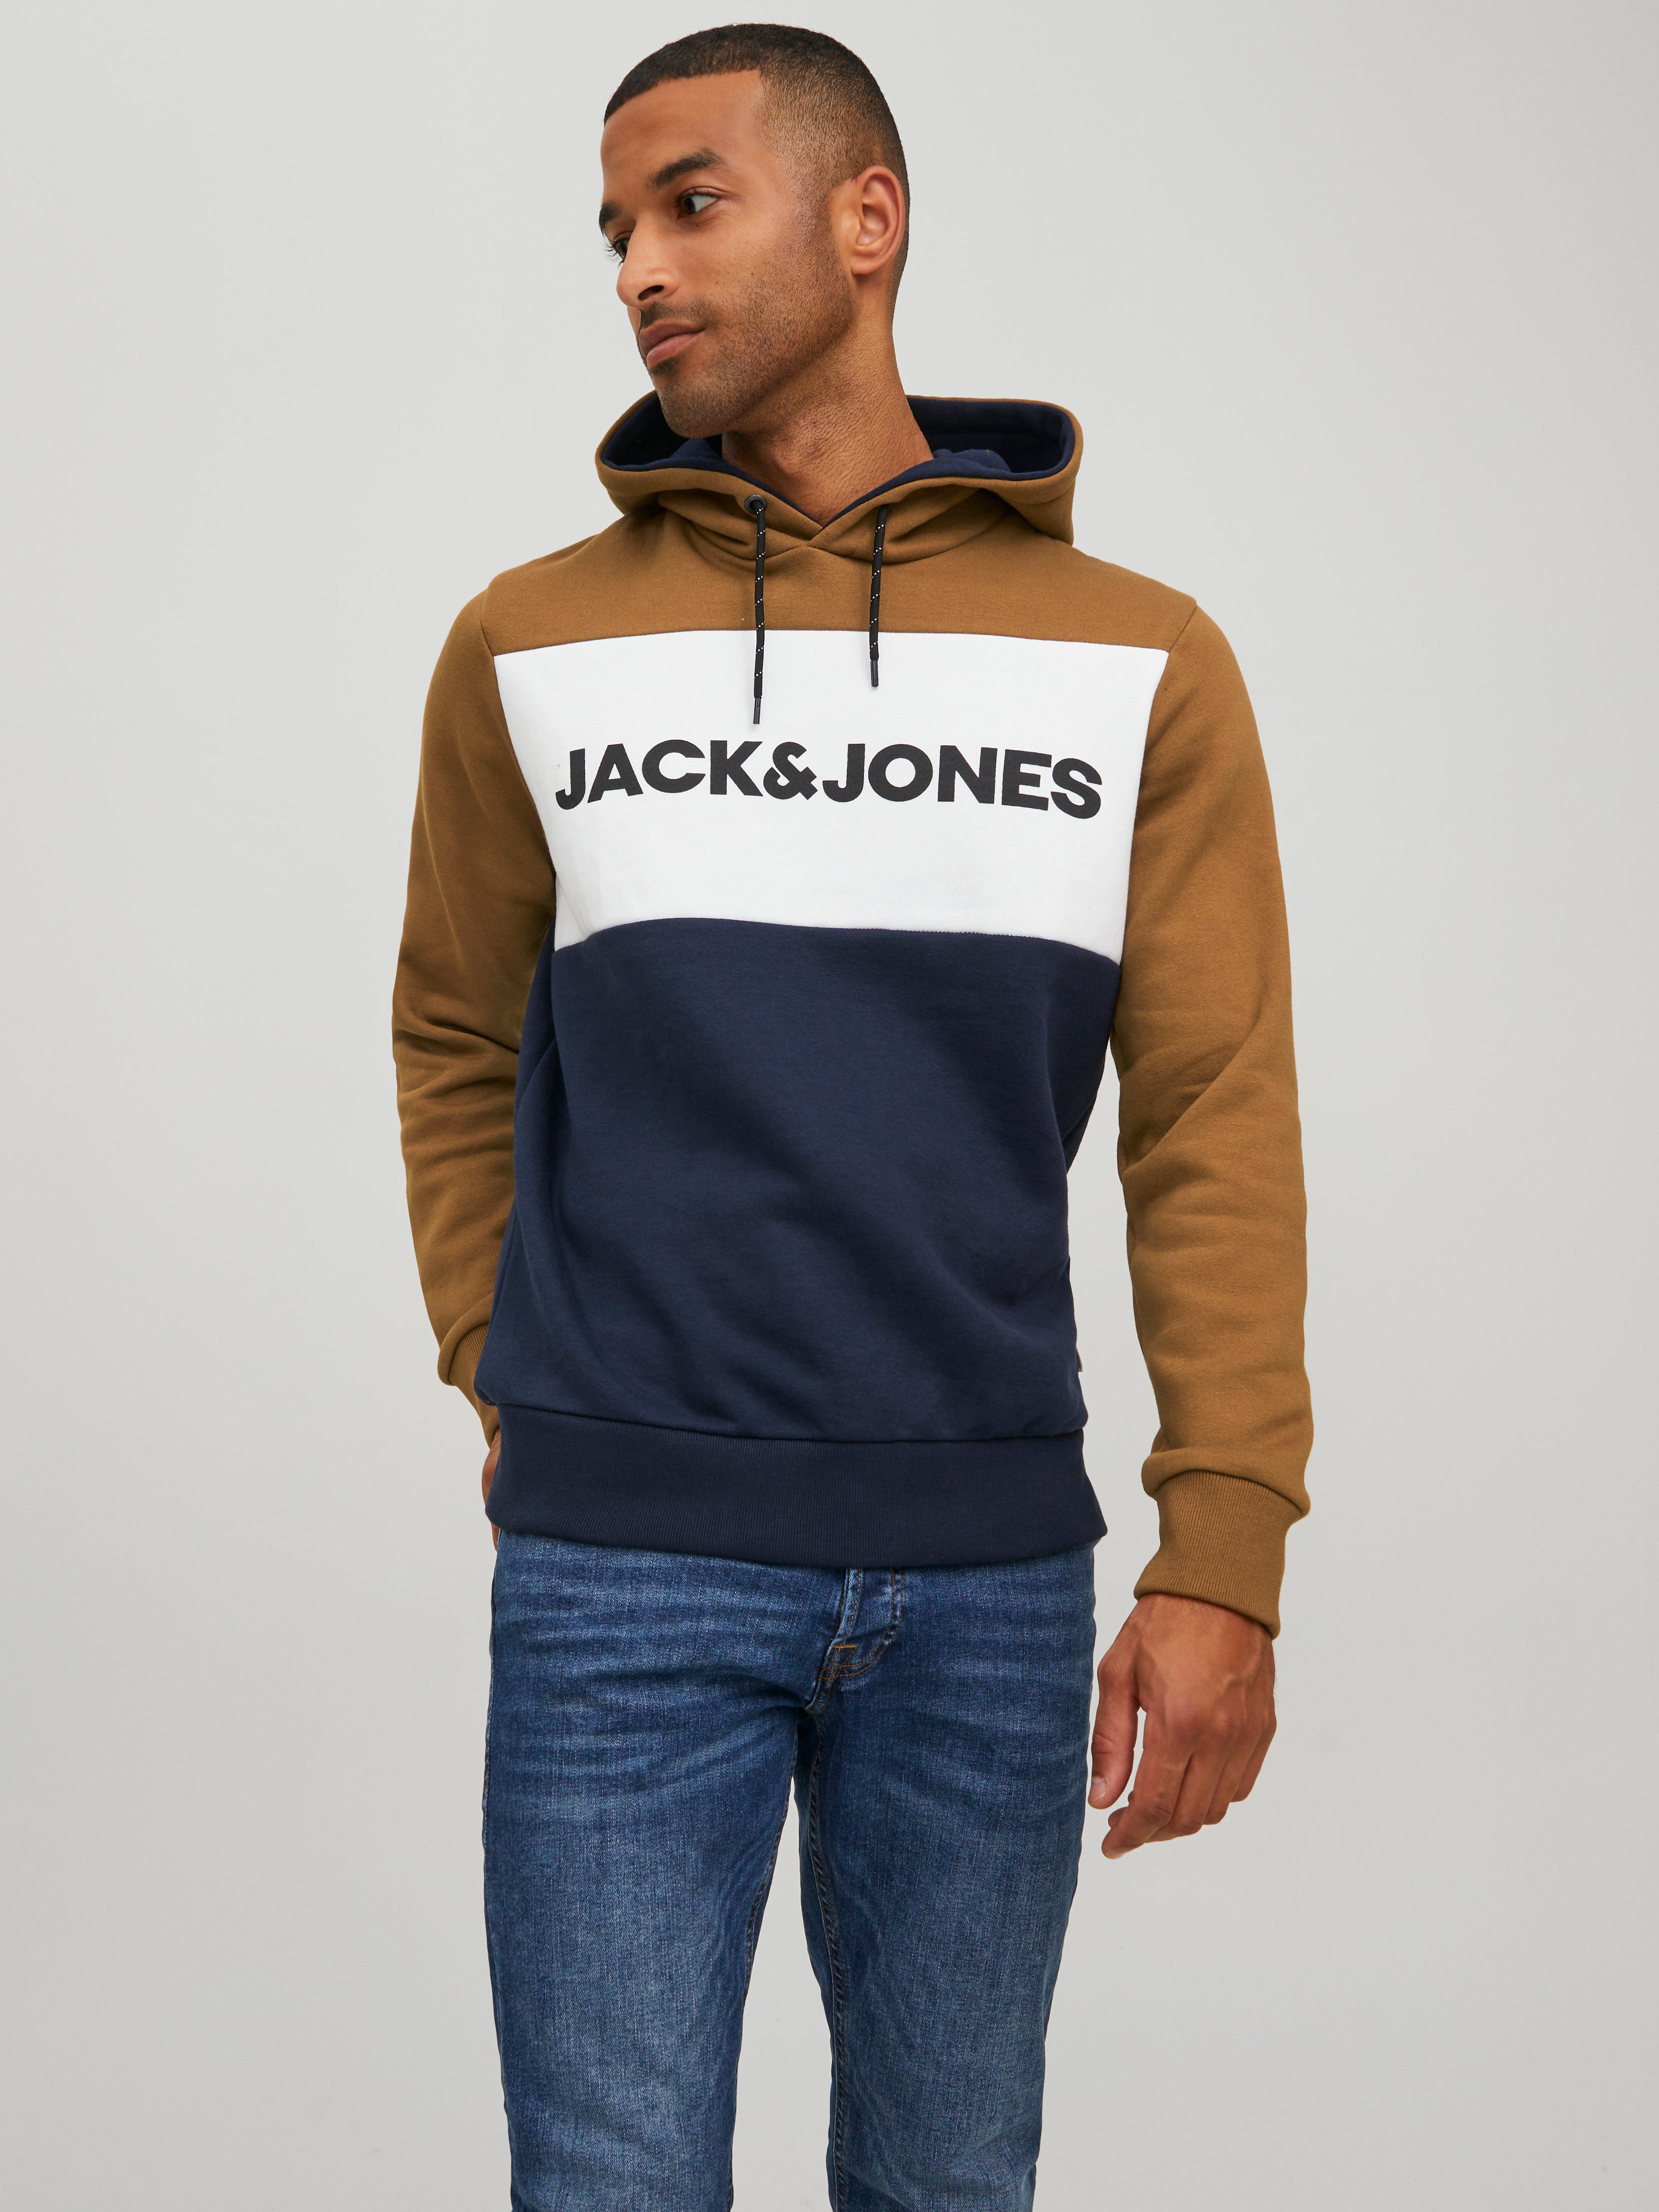 Jack & Jones Hommes Sweatshirt jcotrade Sweat HoodSlim capuche Fête Design 